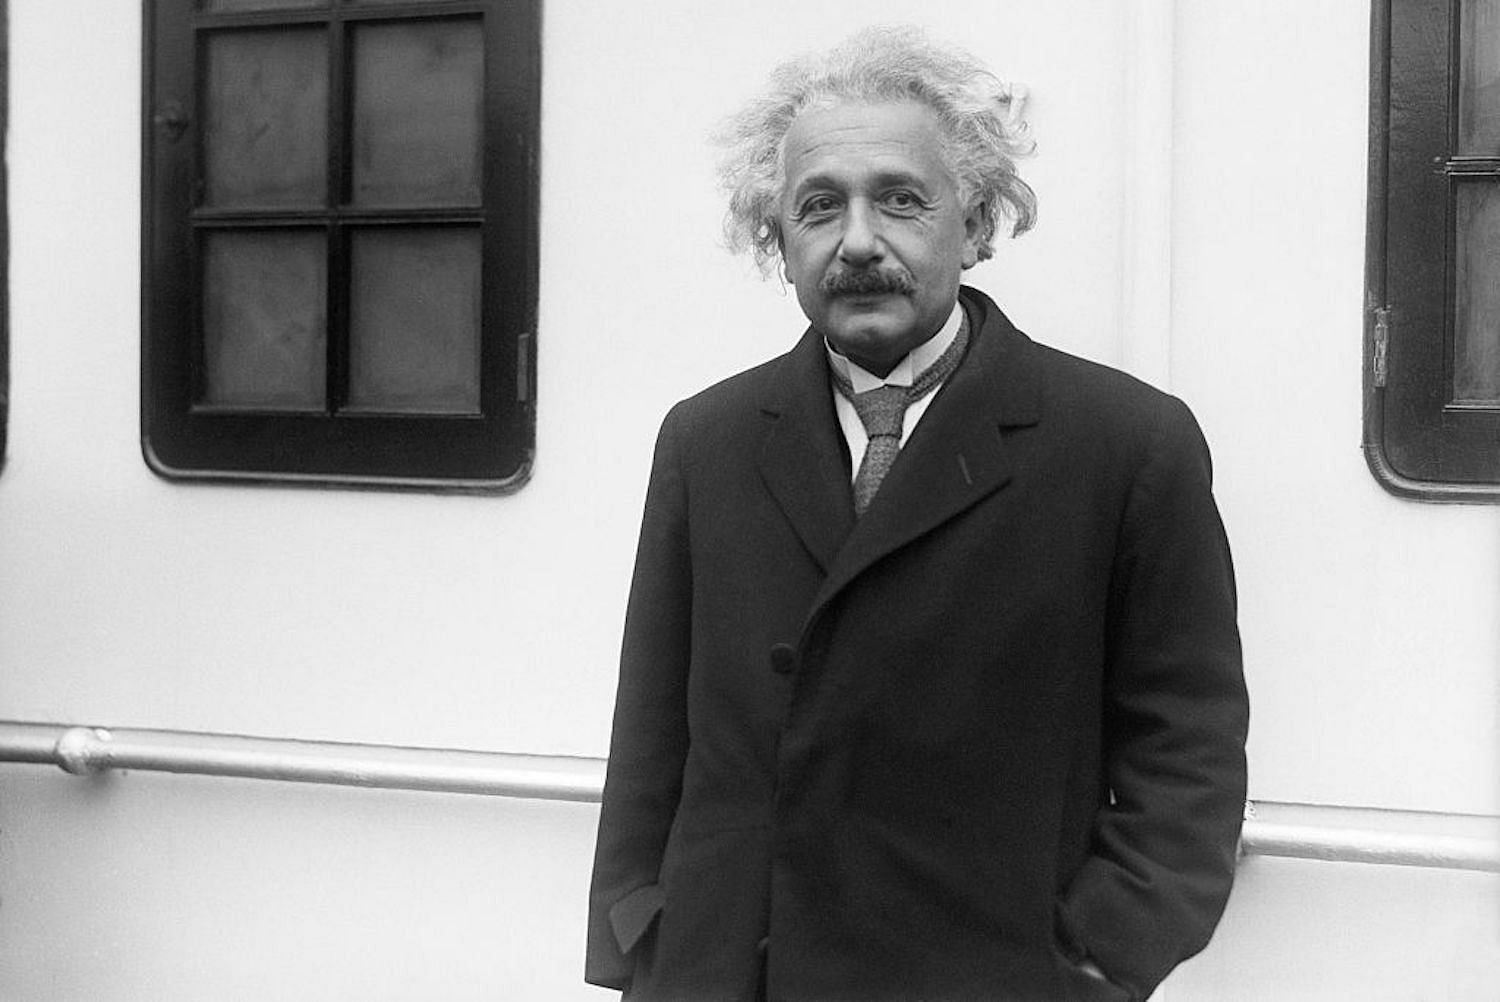 The great Einstein (Image via Getty/Getty)